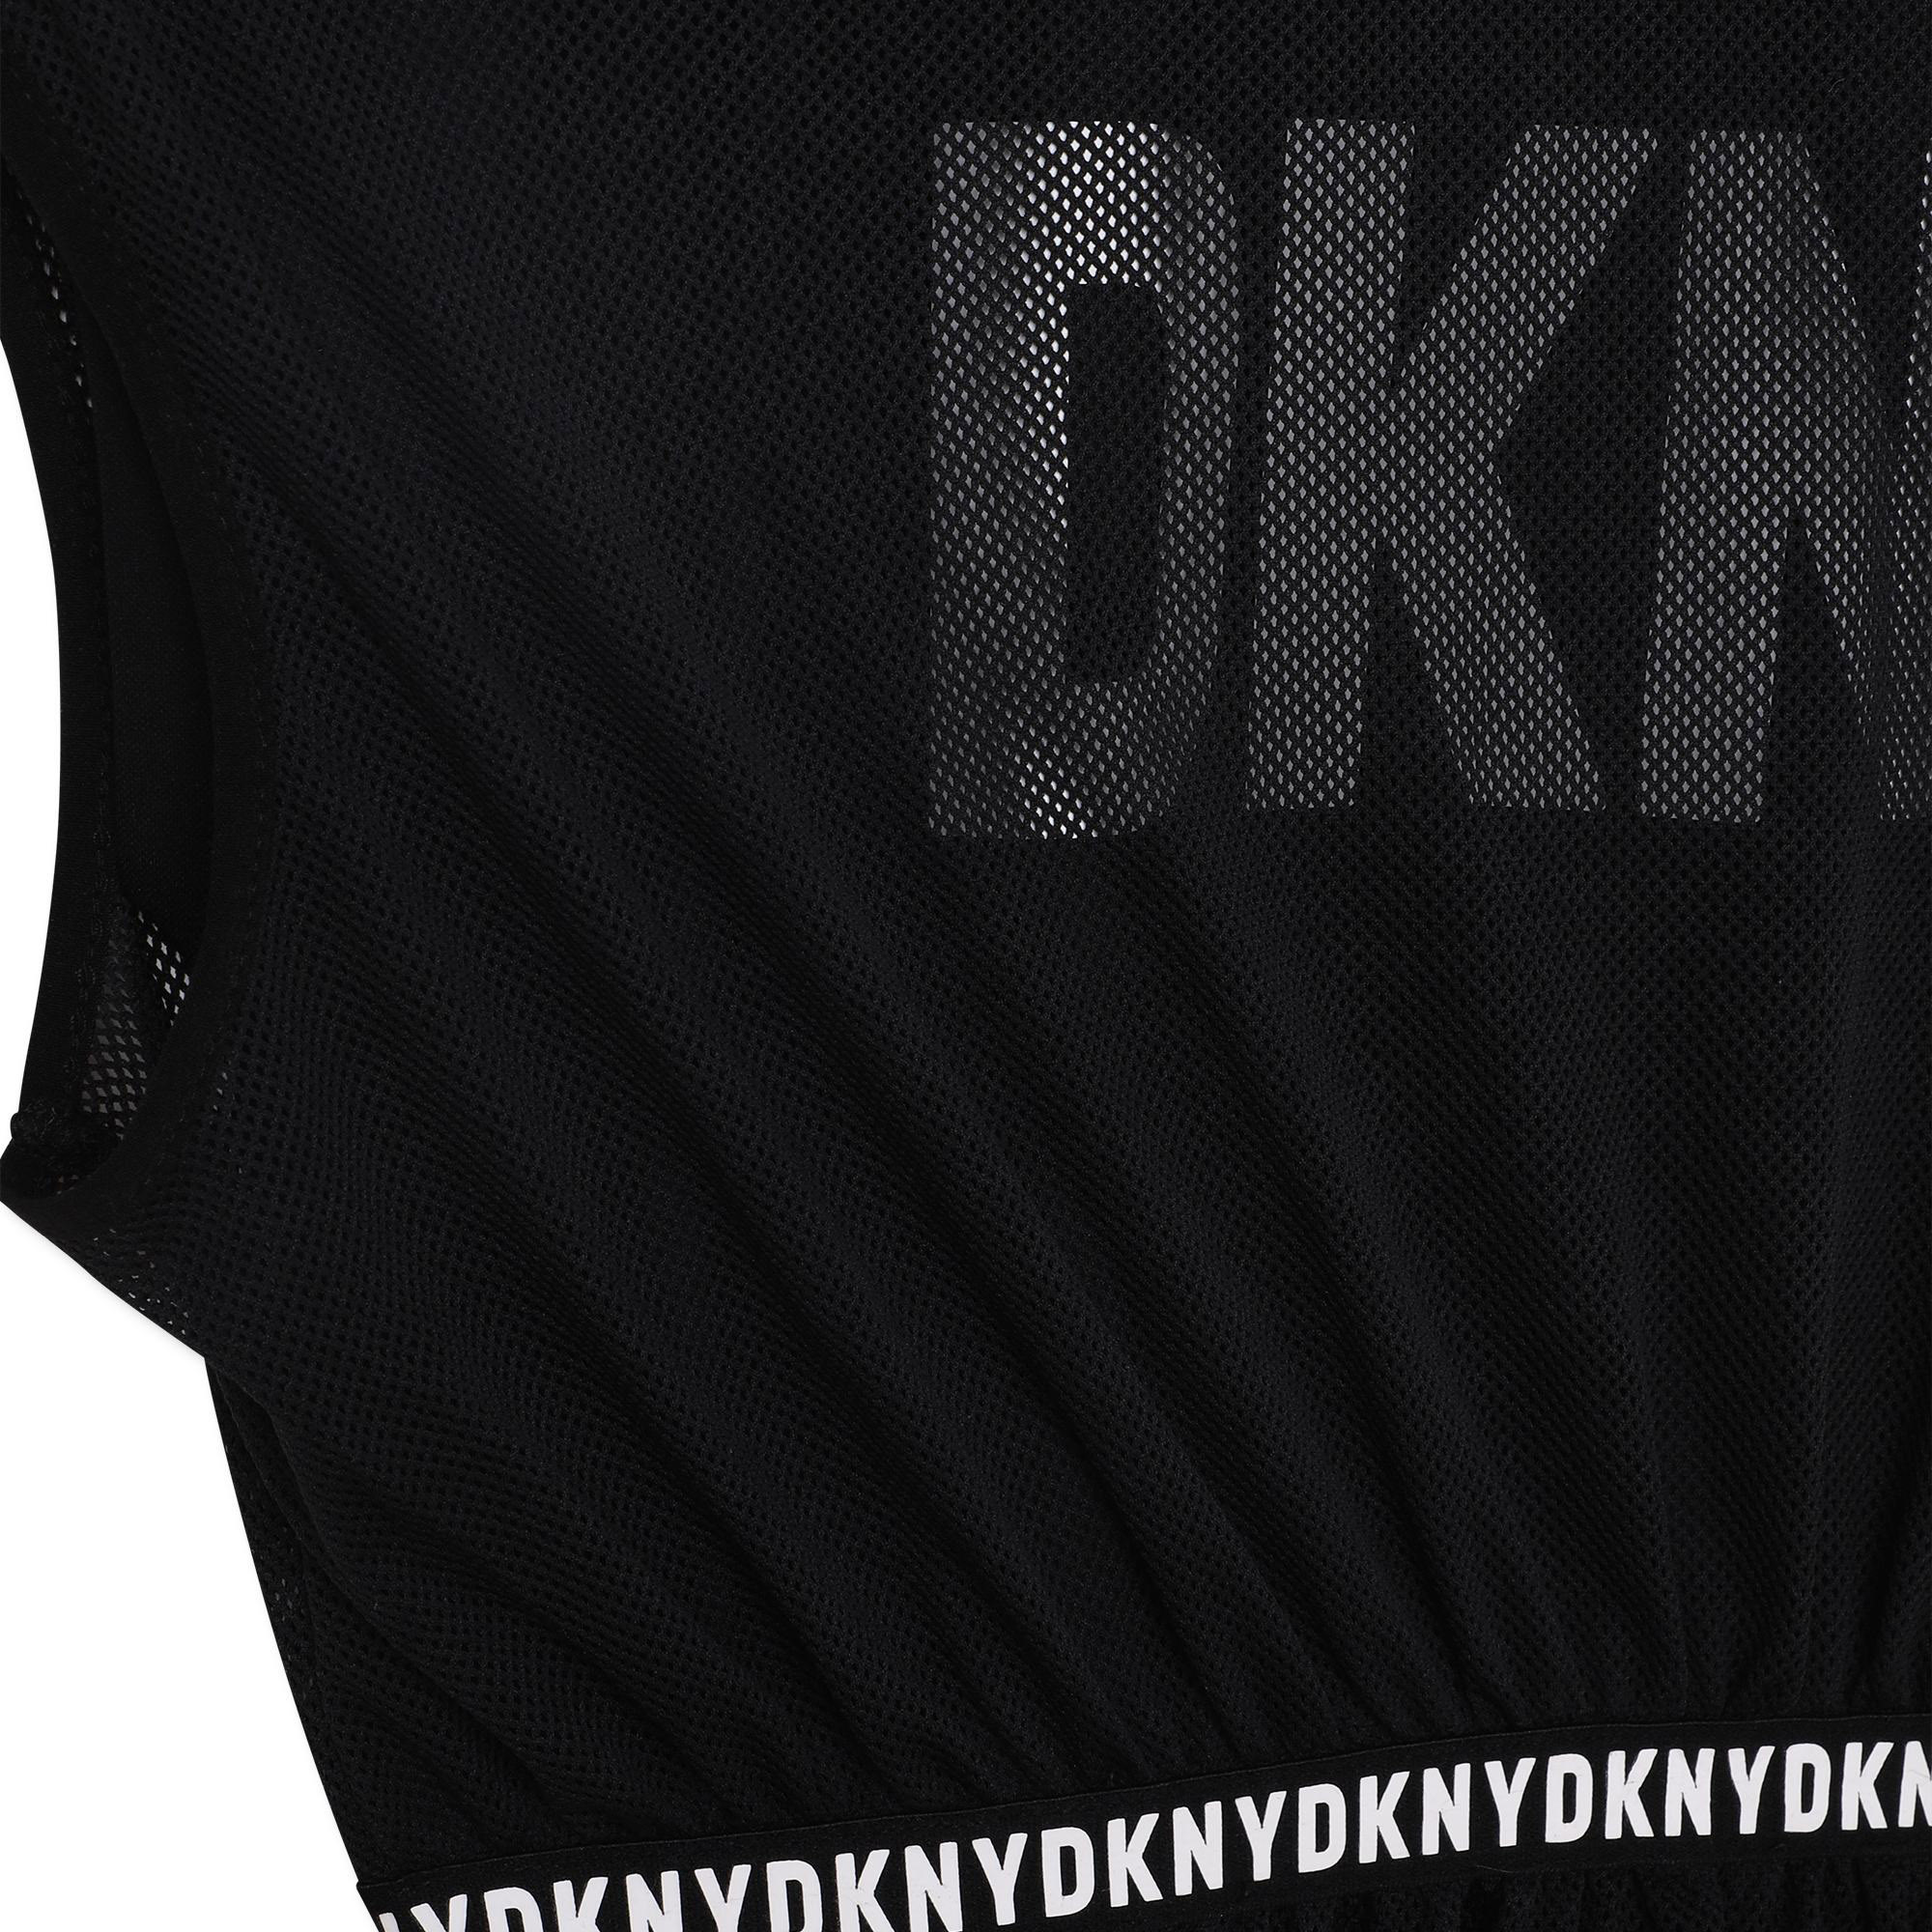 Vestido 2 en 1 espalda abierta DKNY para NIÑA